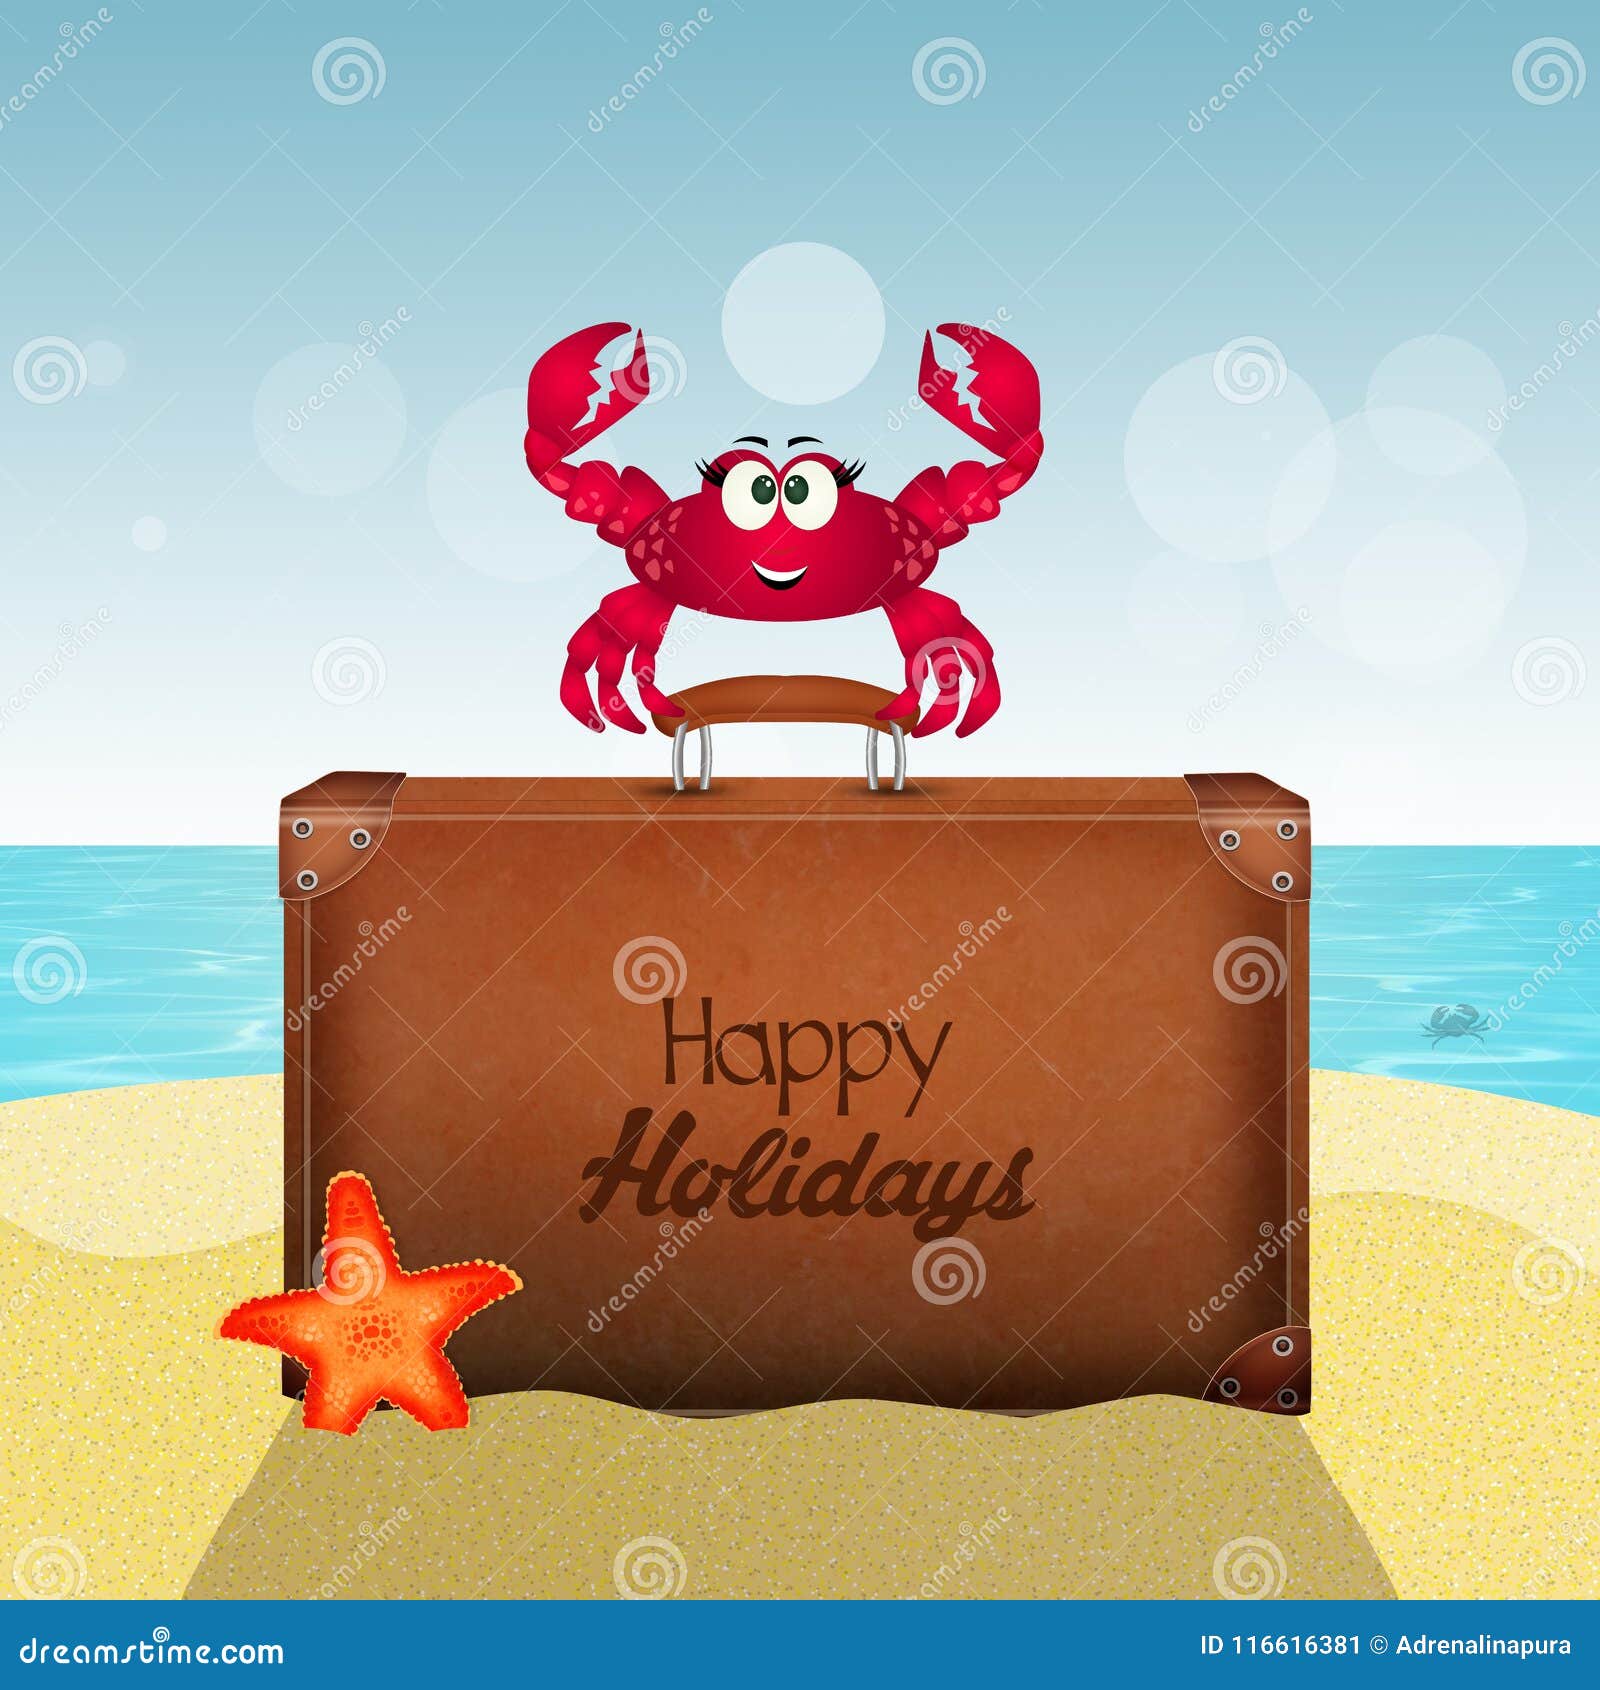 Happy summer holidays stock illustration. Illustration of summer - 116616381